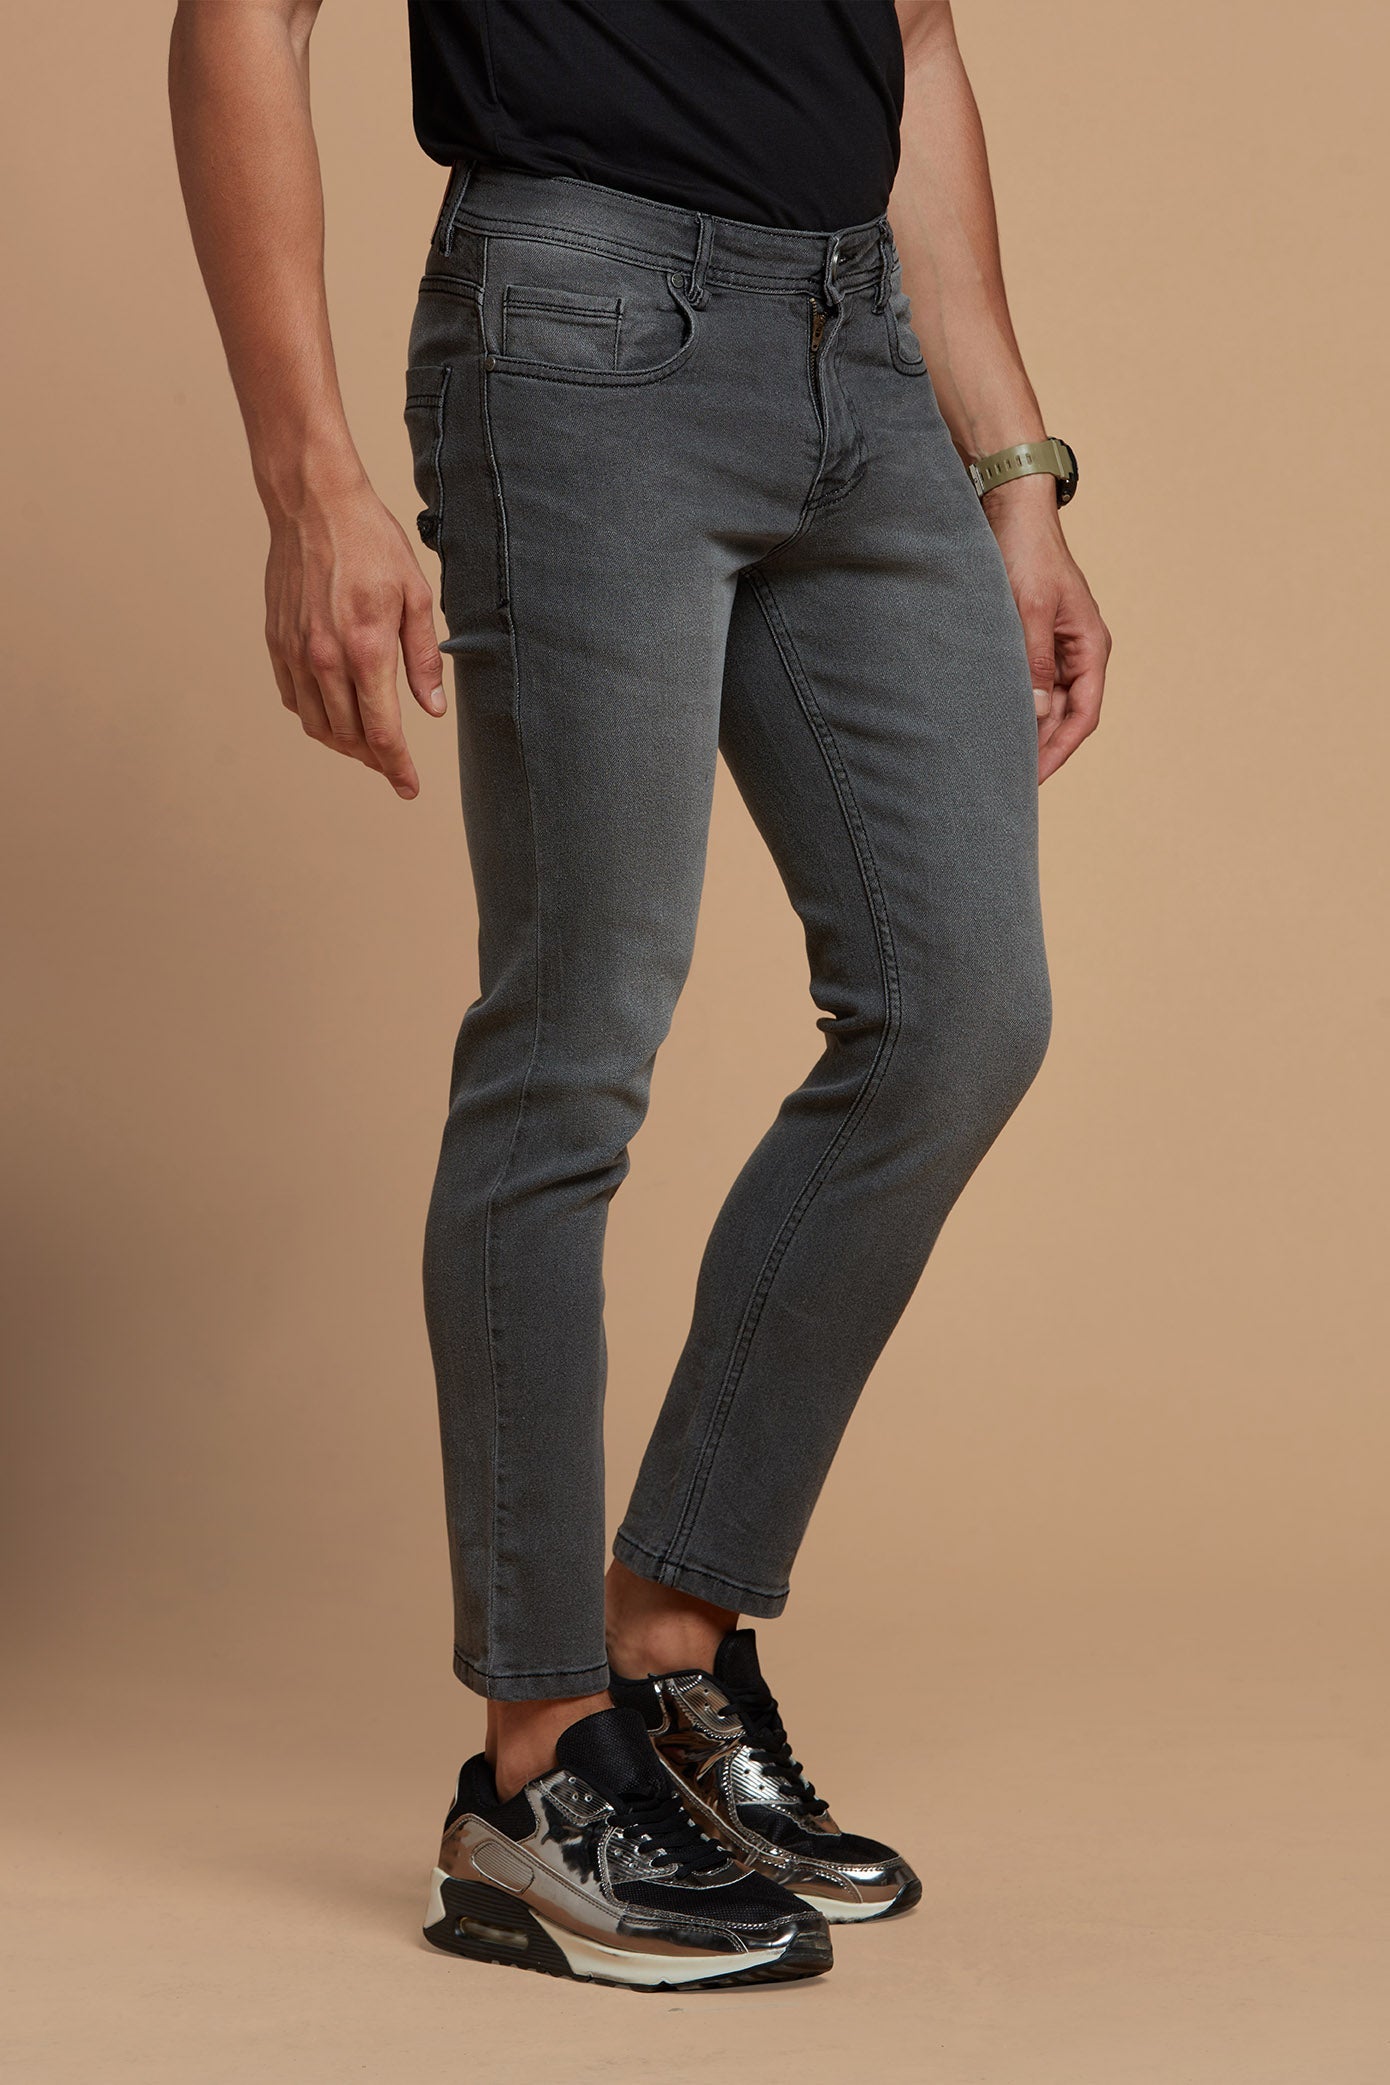 Corteiz Denim Jacket and jeans Unisex Two-piece set sportwear high-quality  Grey | eBay